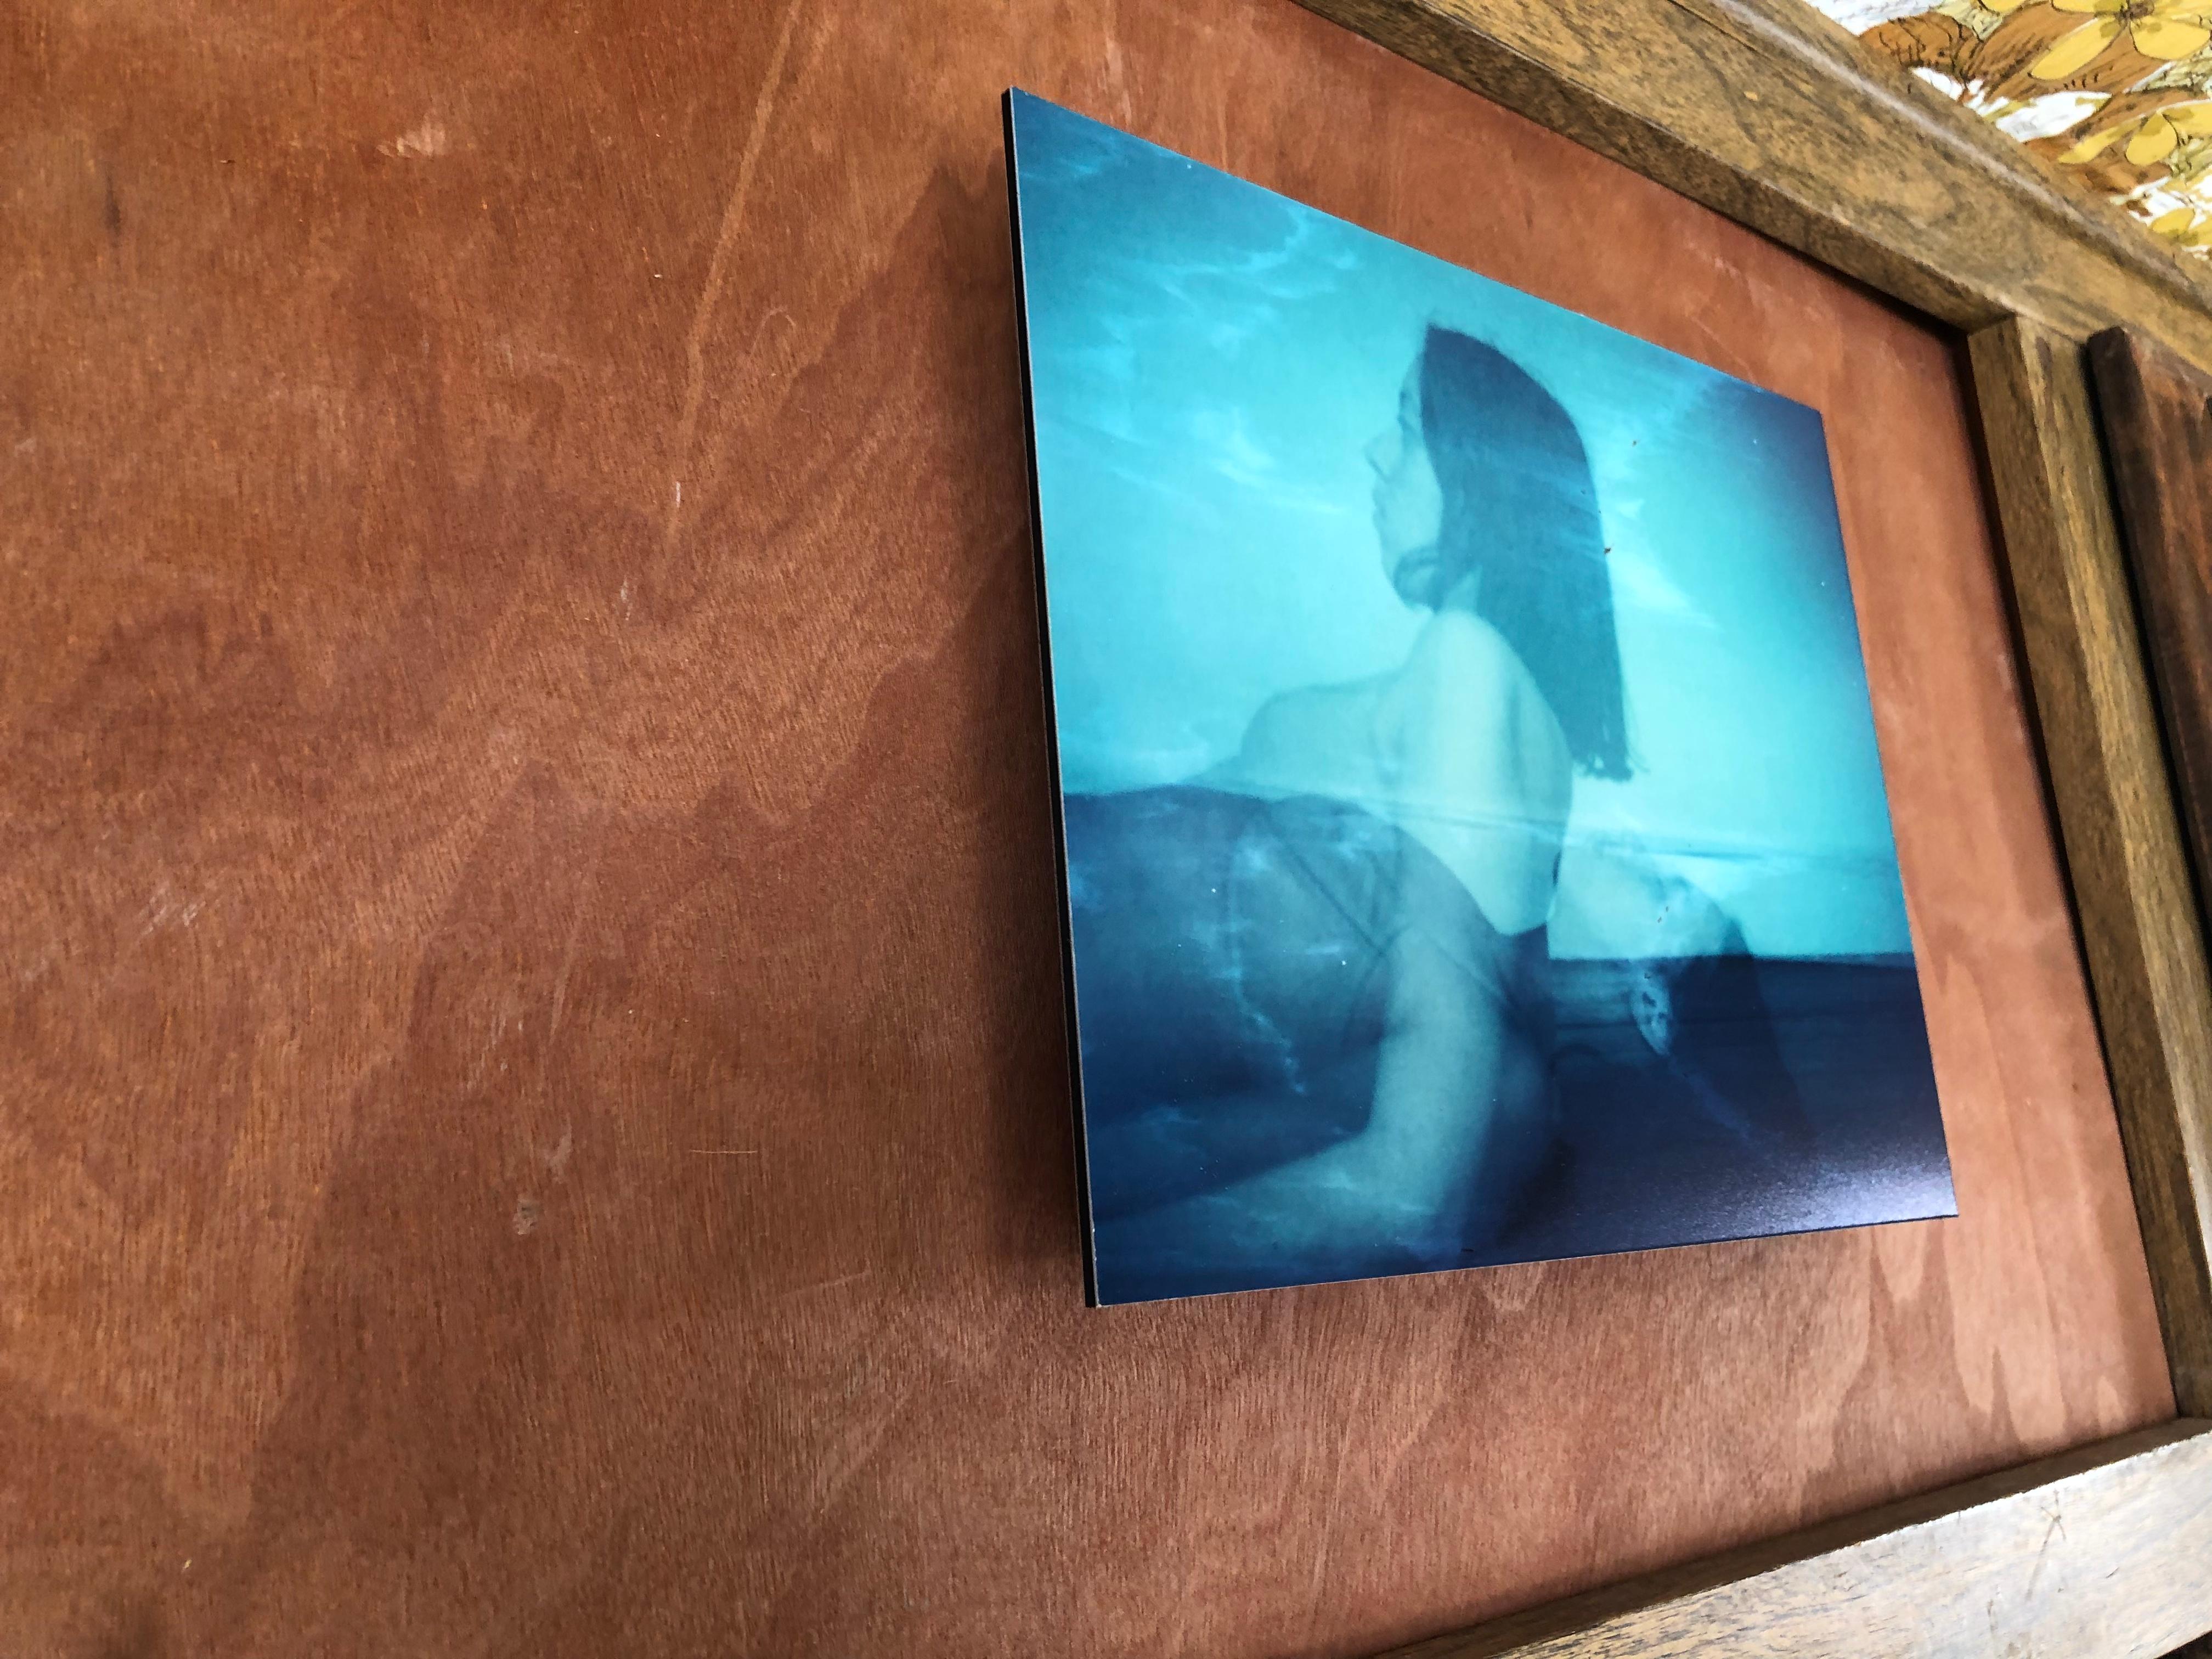 Sleep Anxiety - Montiert, Zeitgenössisch, Polaroid, Farbe, Porträt (Blau), Portrait Photograph, von Leanne Surfleet